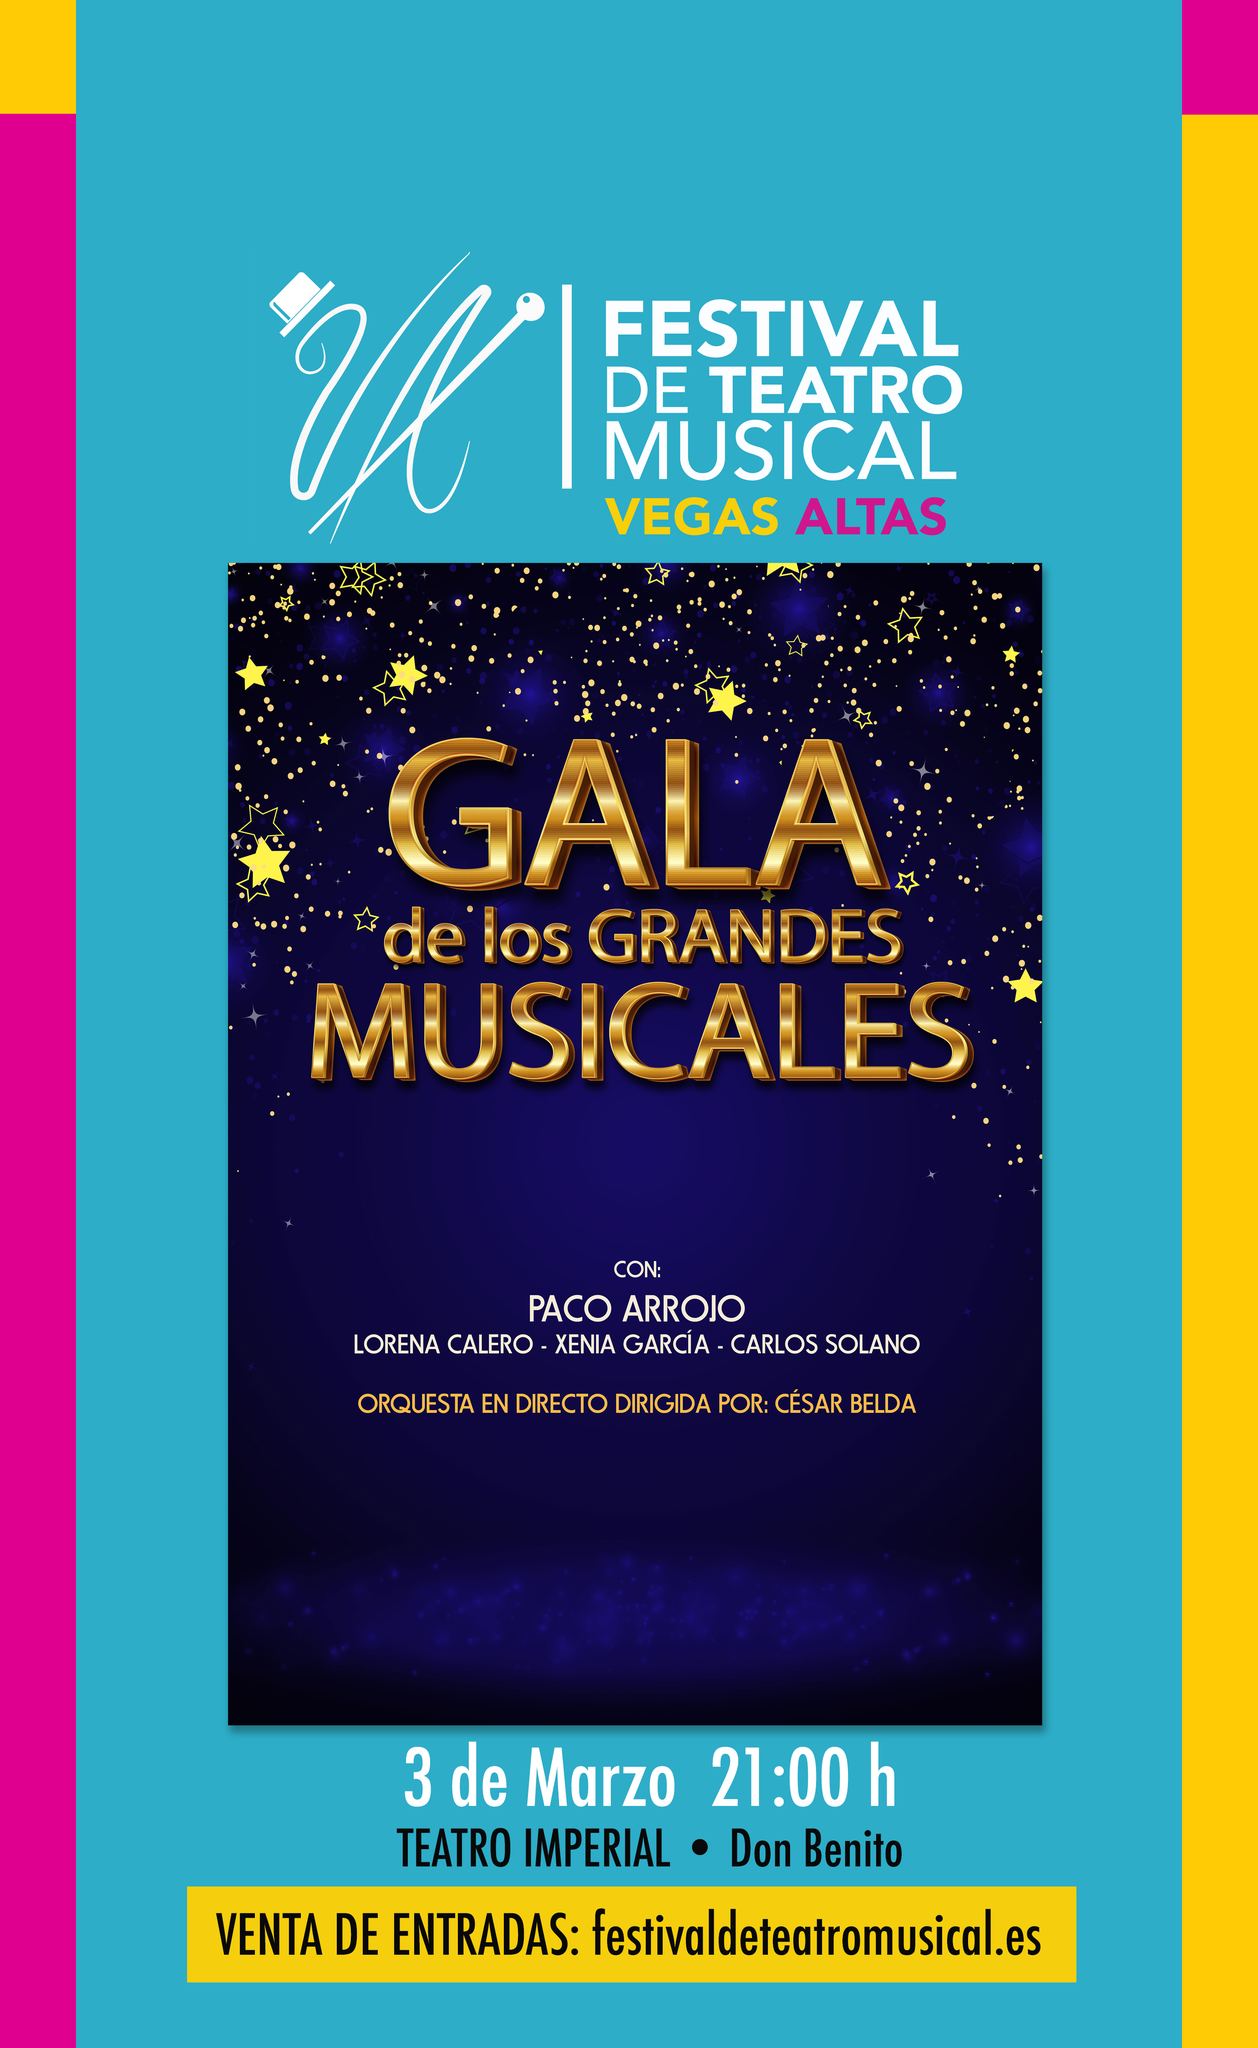 Inauguración Festival de Teatro Musical Vegas Altas «Gala de los grandes Musicales»